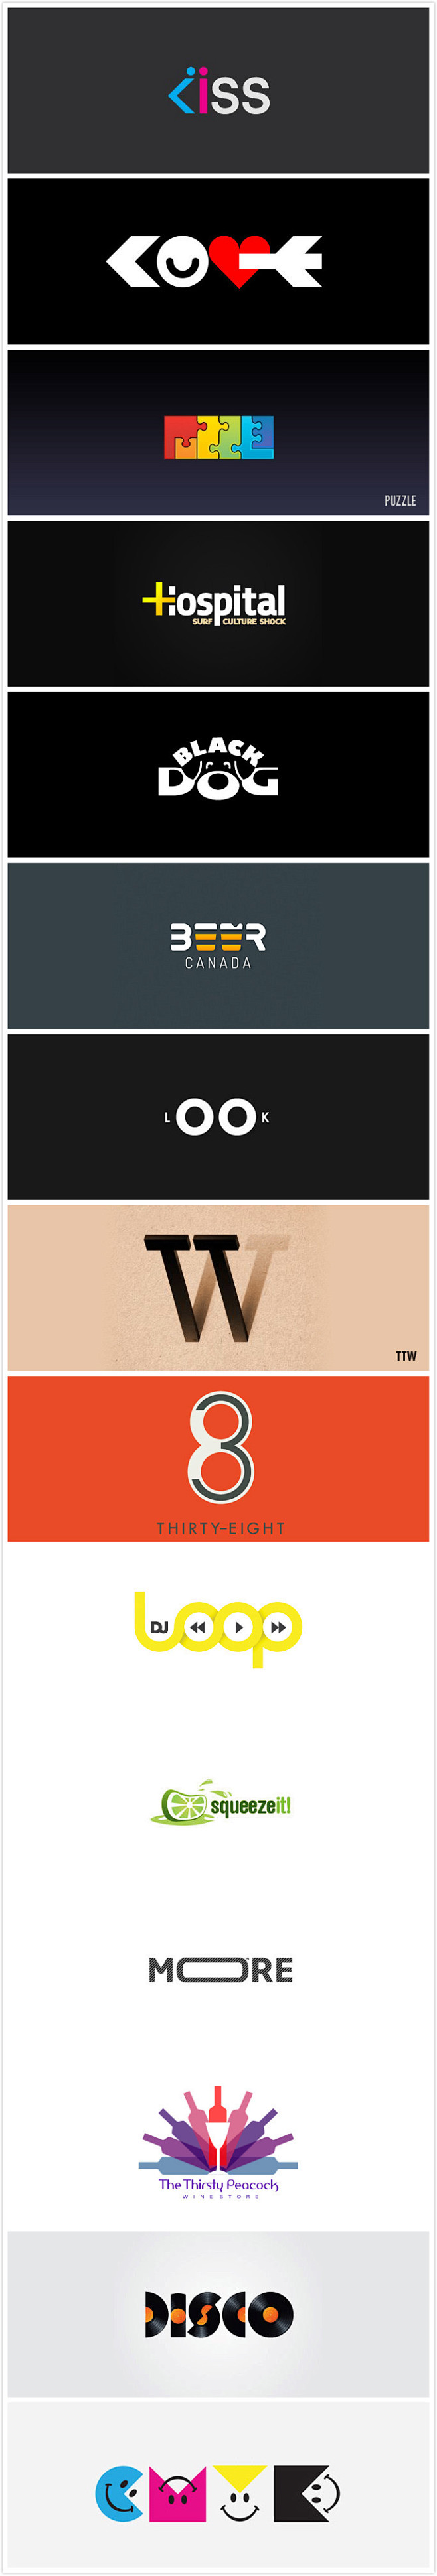 企业形象从logo开始 第三波~
0-0...